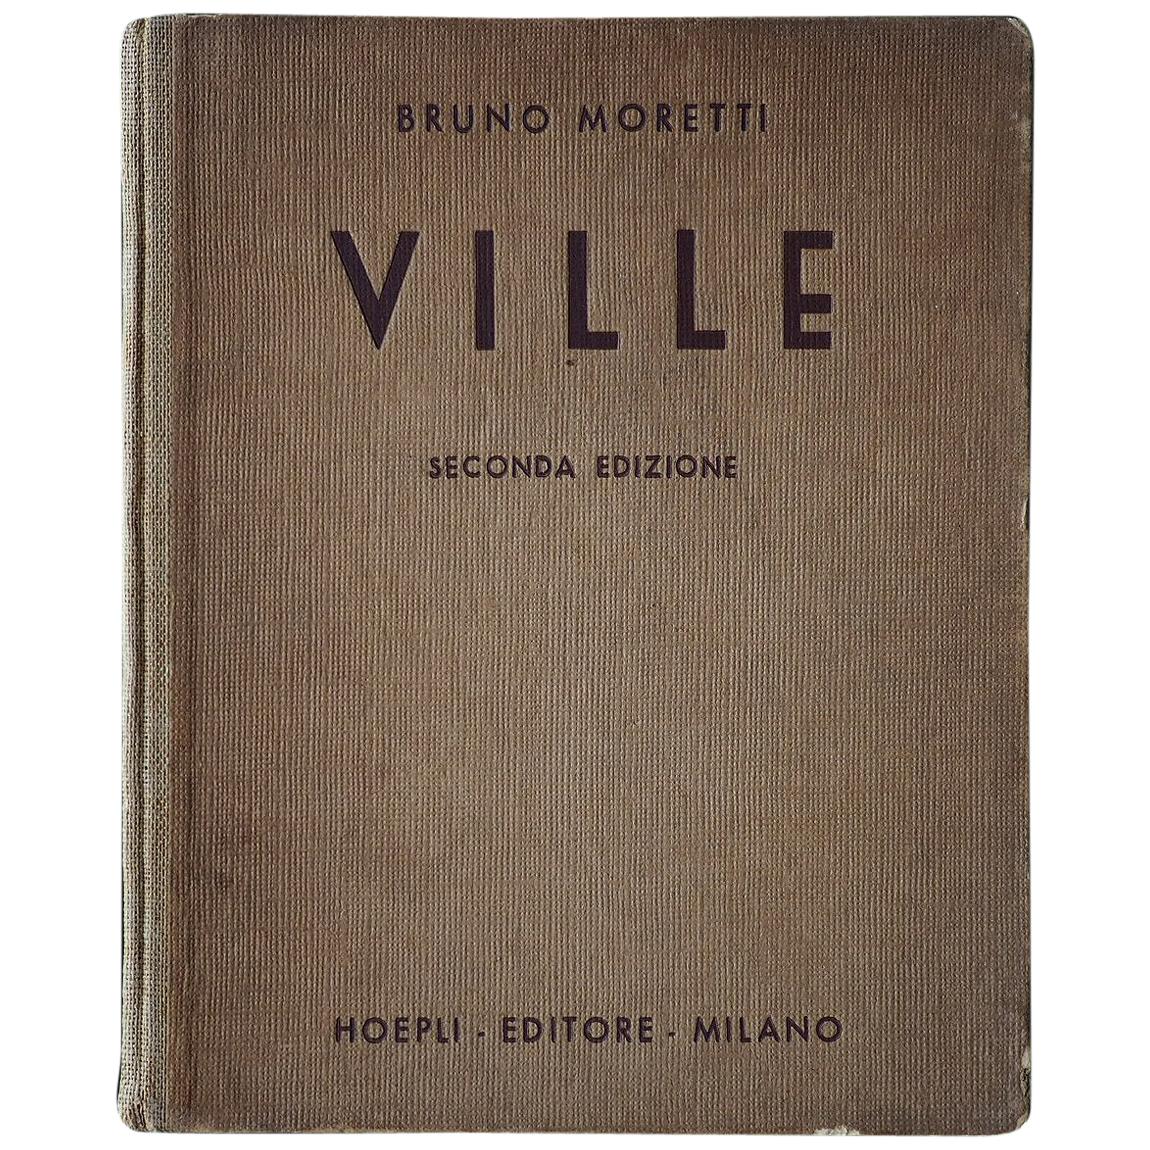 Ville by Bruno Moretti, 1944